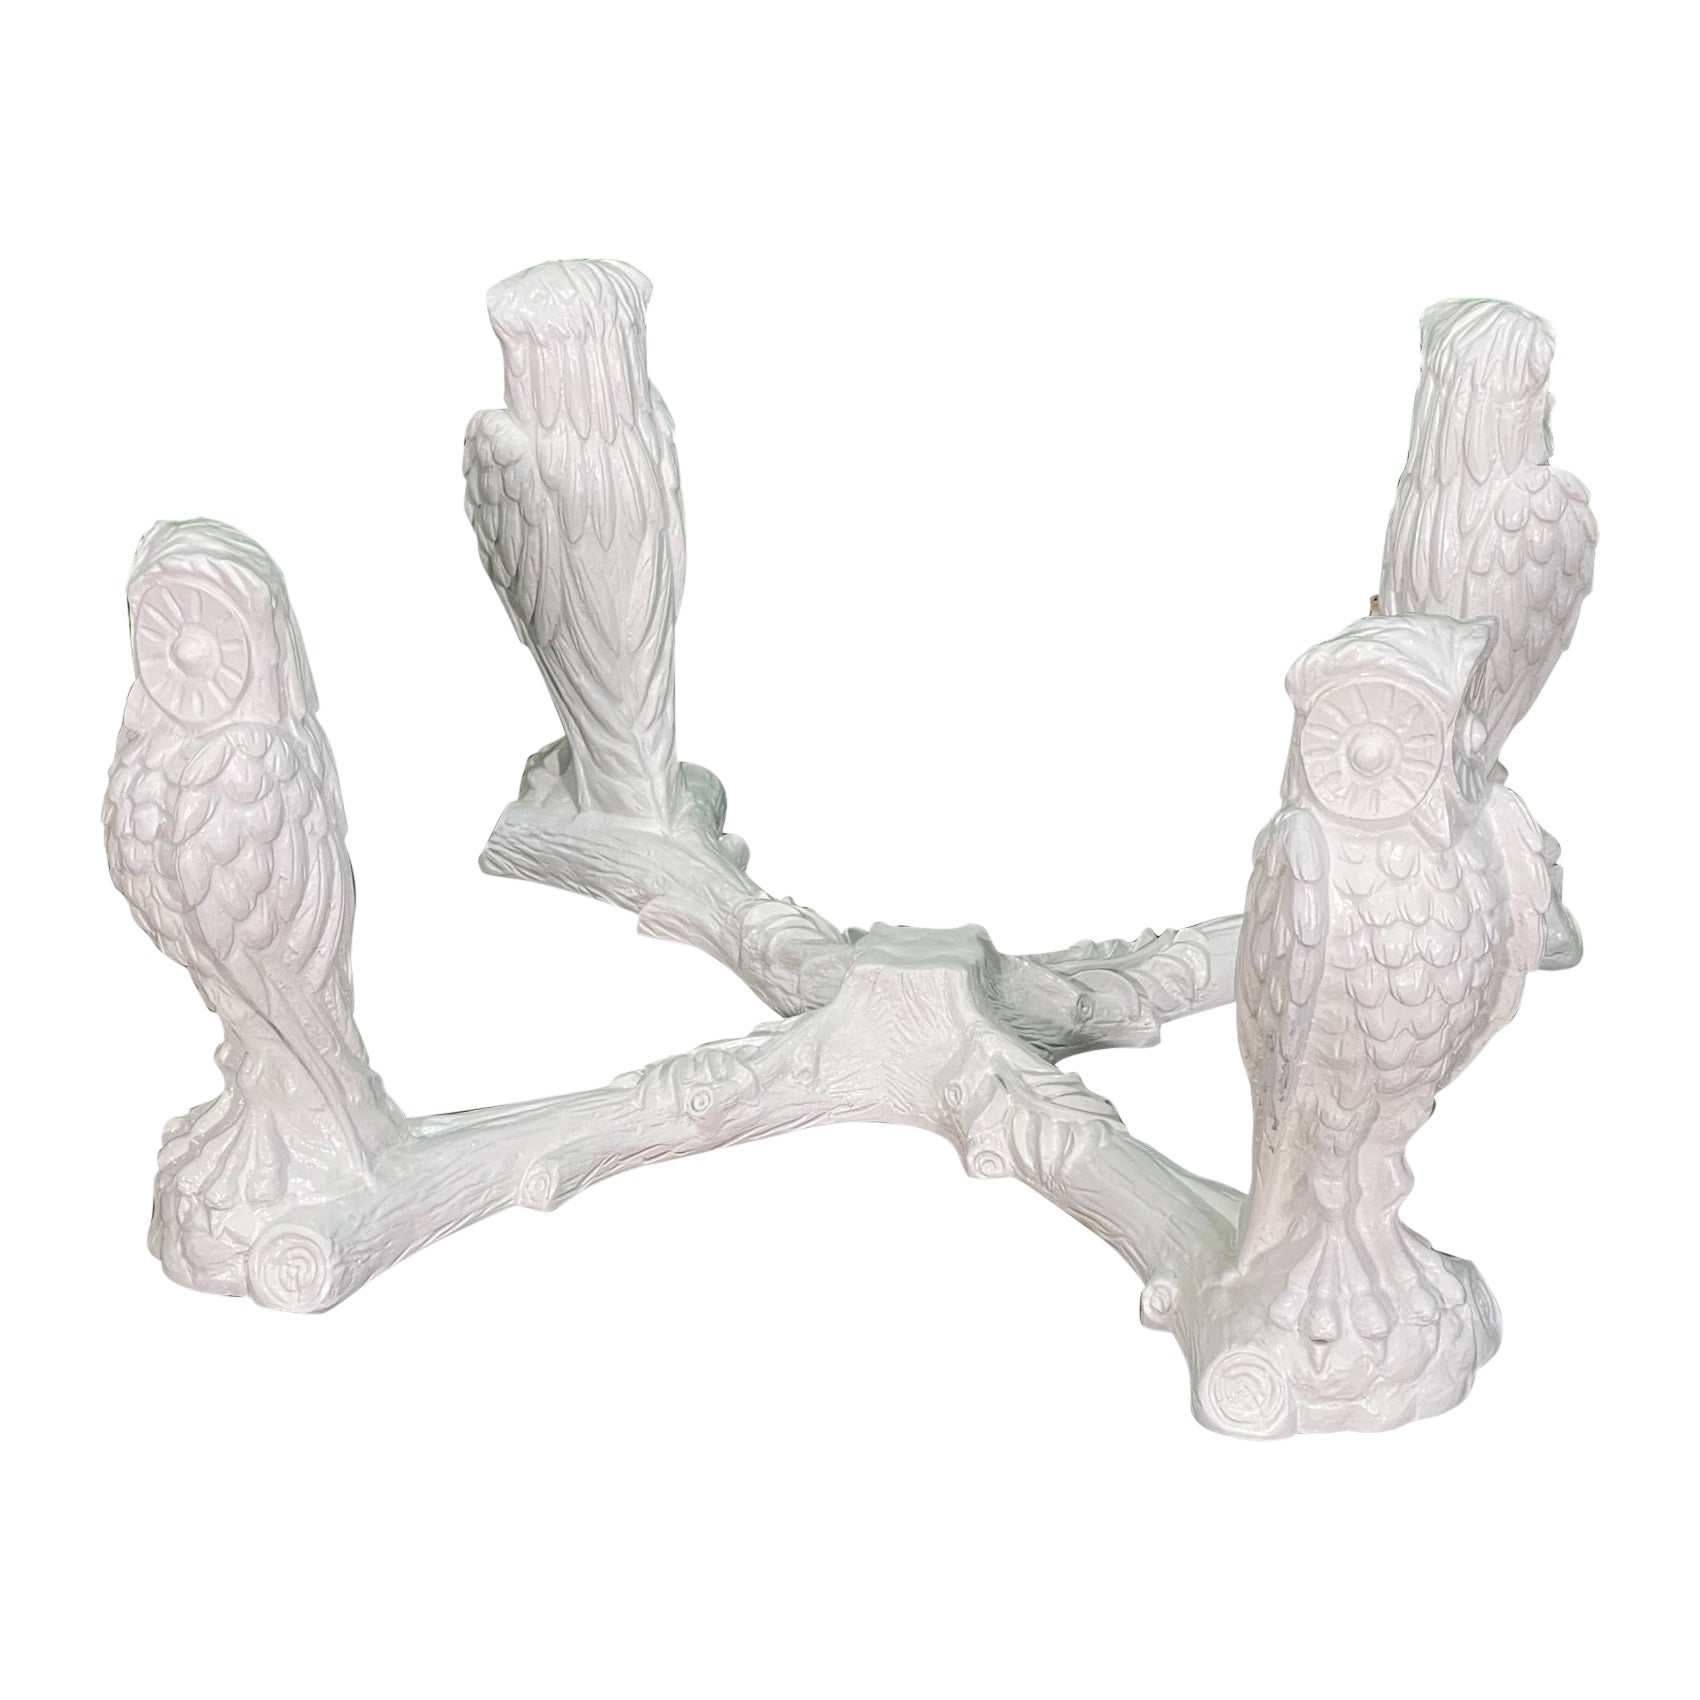 Gampel Stoll Base de table basse sculpturale en forme de hibou